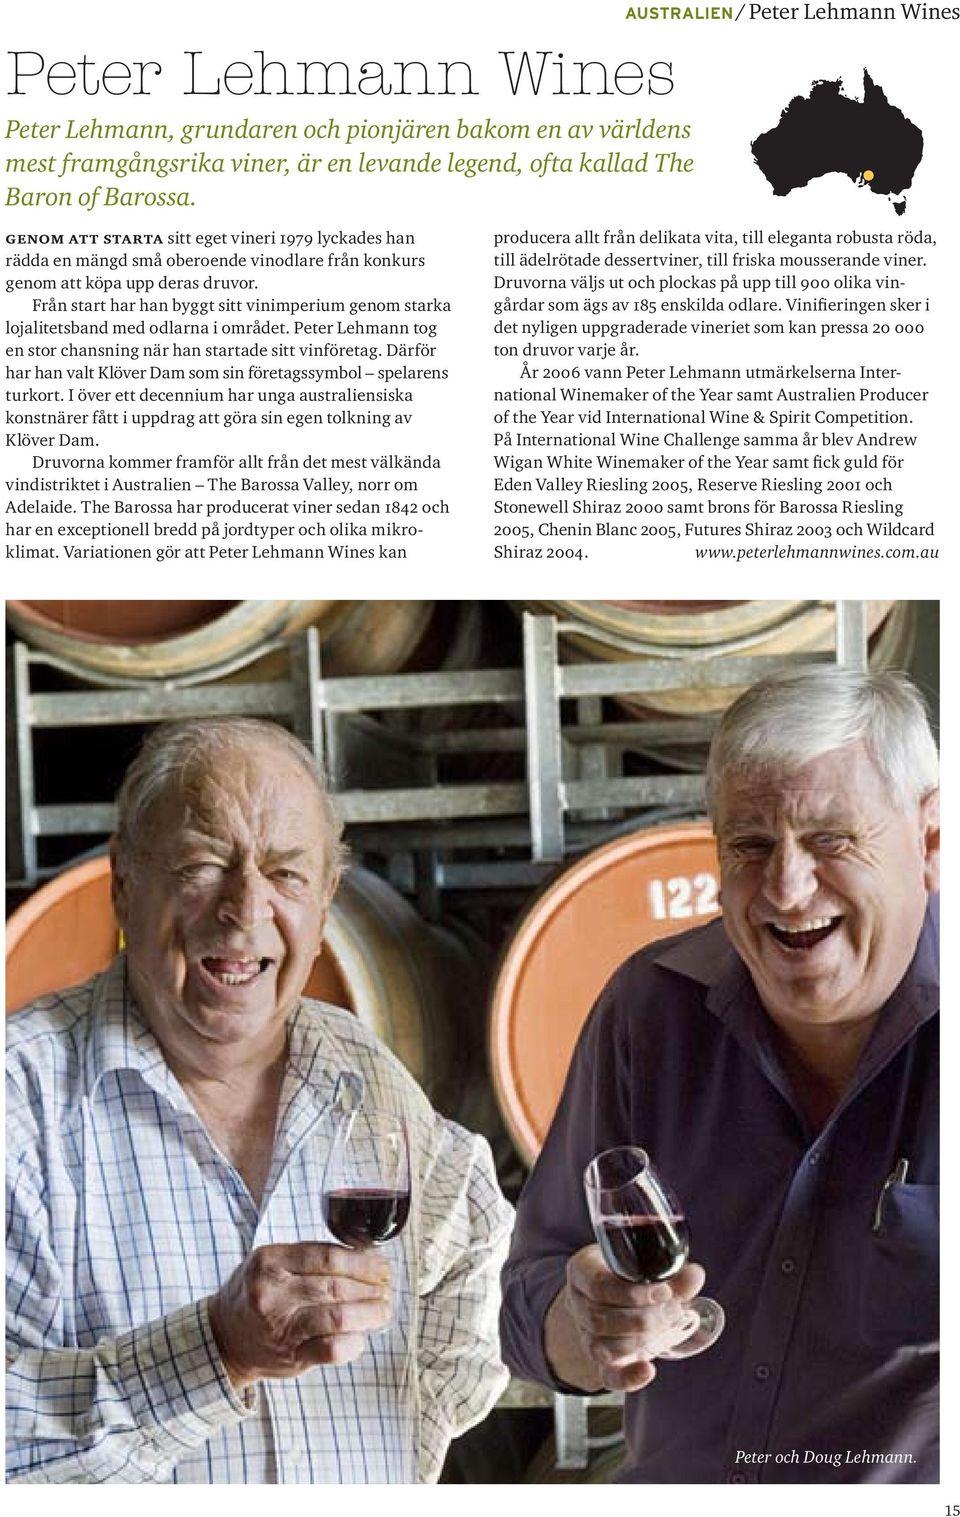 Från start har han byggt sitt vinimperium genom starka lojalitetsband med odlarna i området. Peter Lehmann tog en stor chansning när han startade sitt vinföretag.